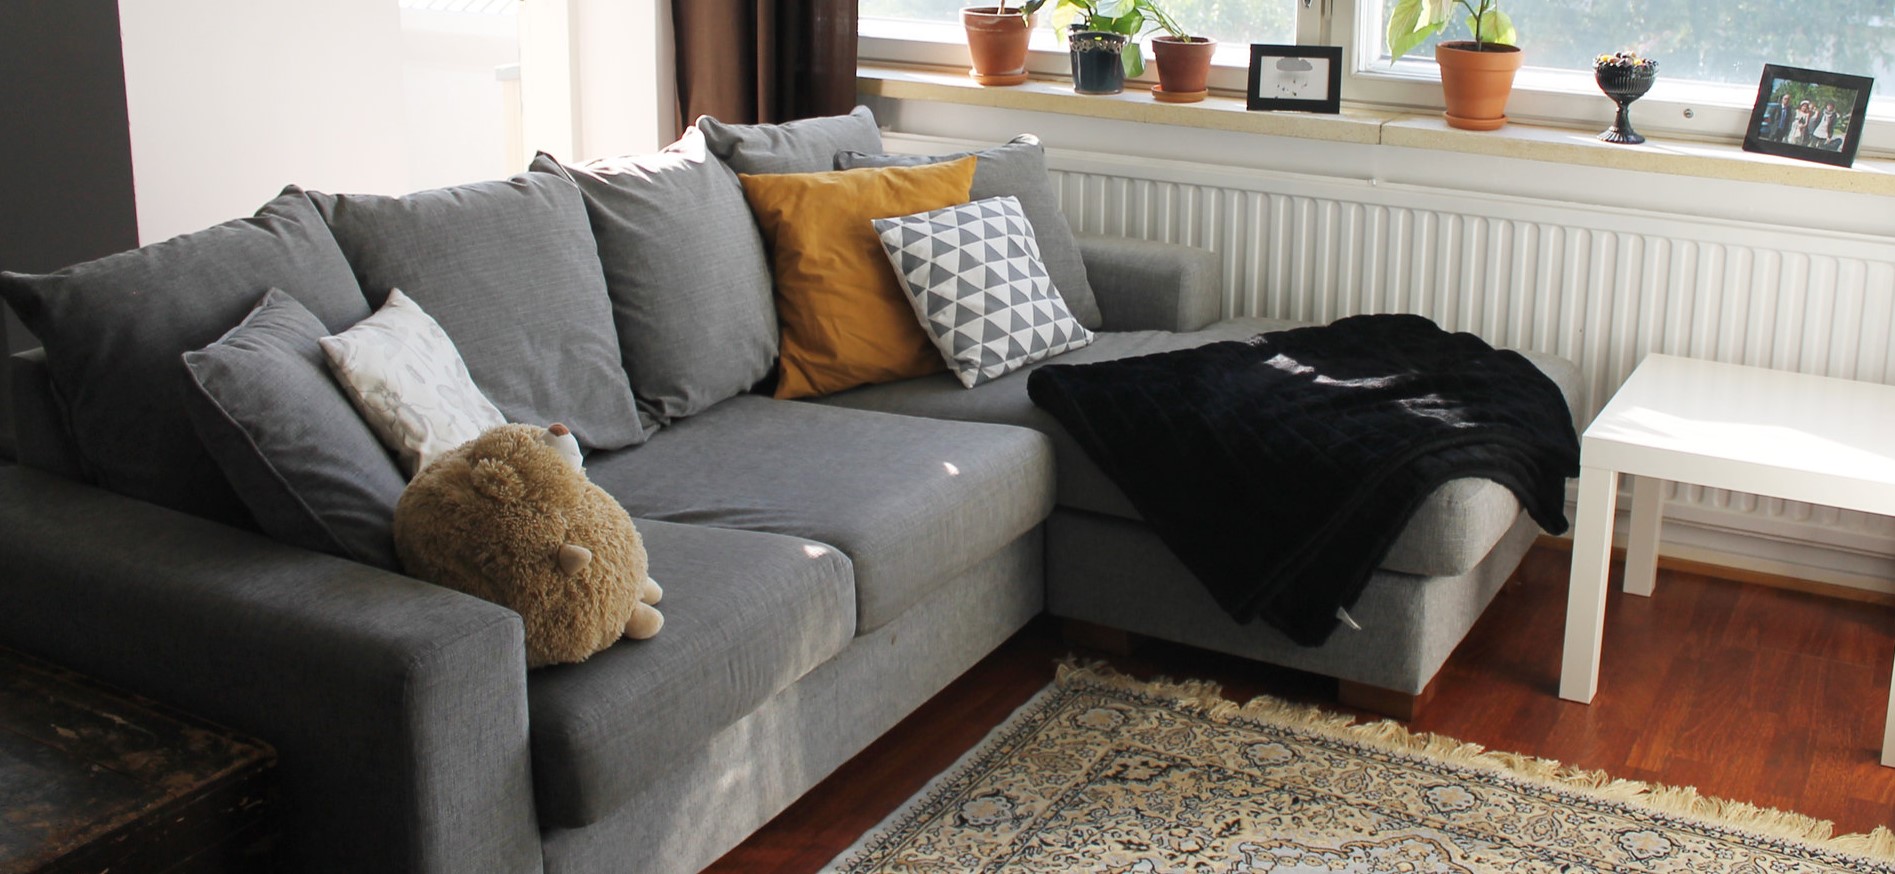 Важно, чтобы обивка дивана легко очищалась от загрязнений и была прочной